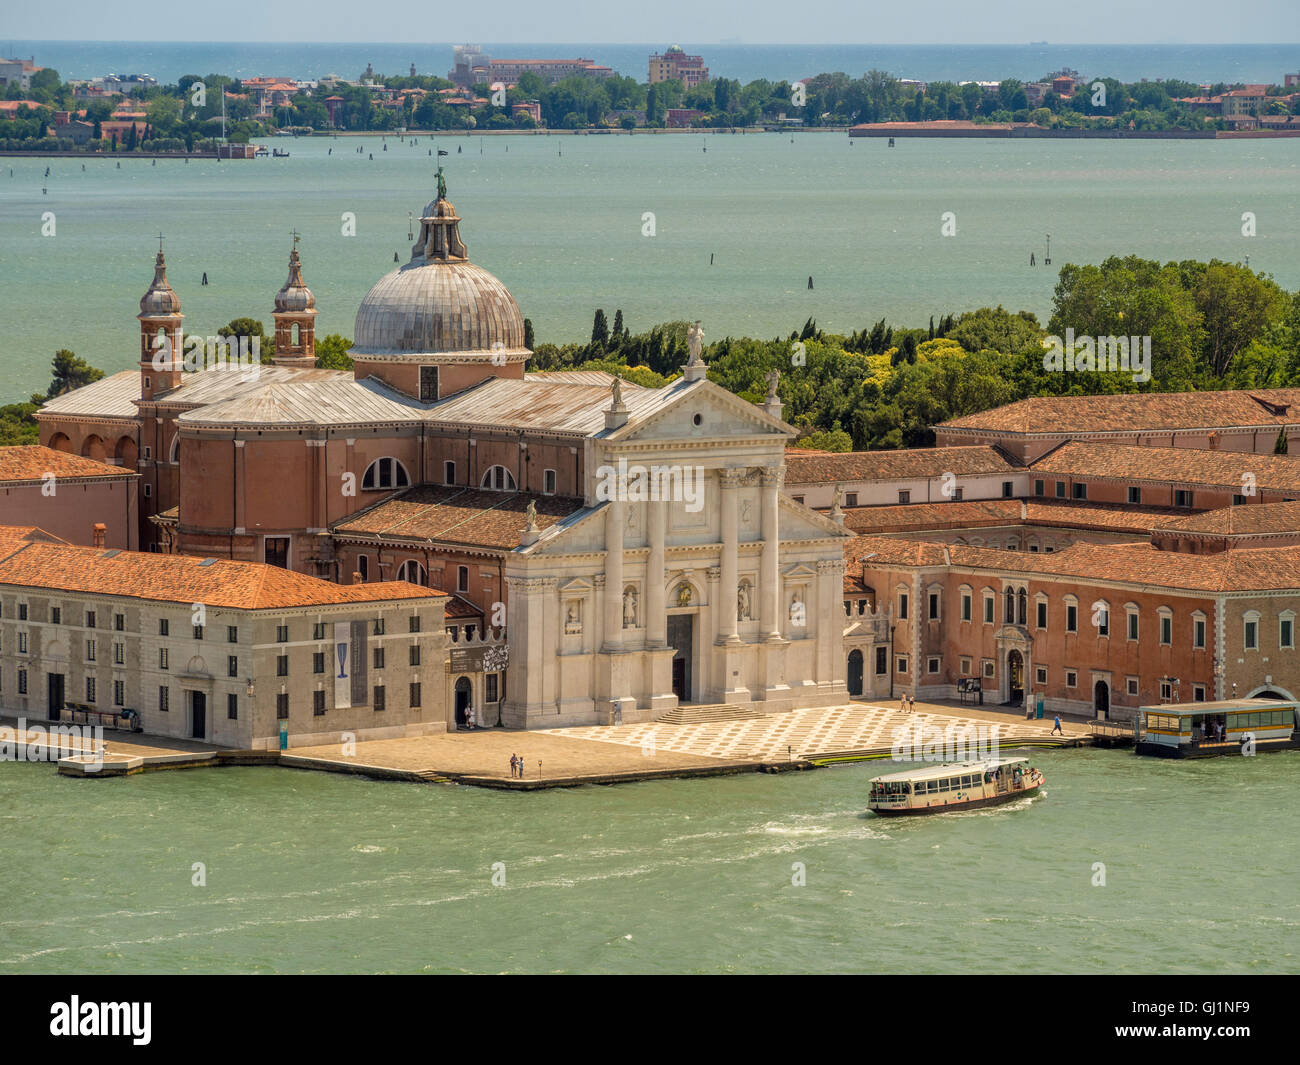 Istria blanca fachada de mármol de la iglesia de San Giorgio Maggiore, en la isla del mismo nombre, la ciudad de Venecia, Italia. Foto de stock